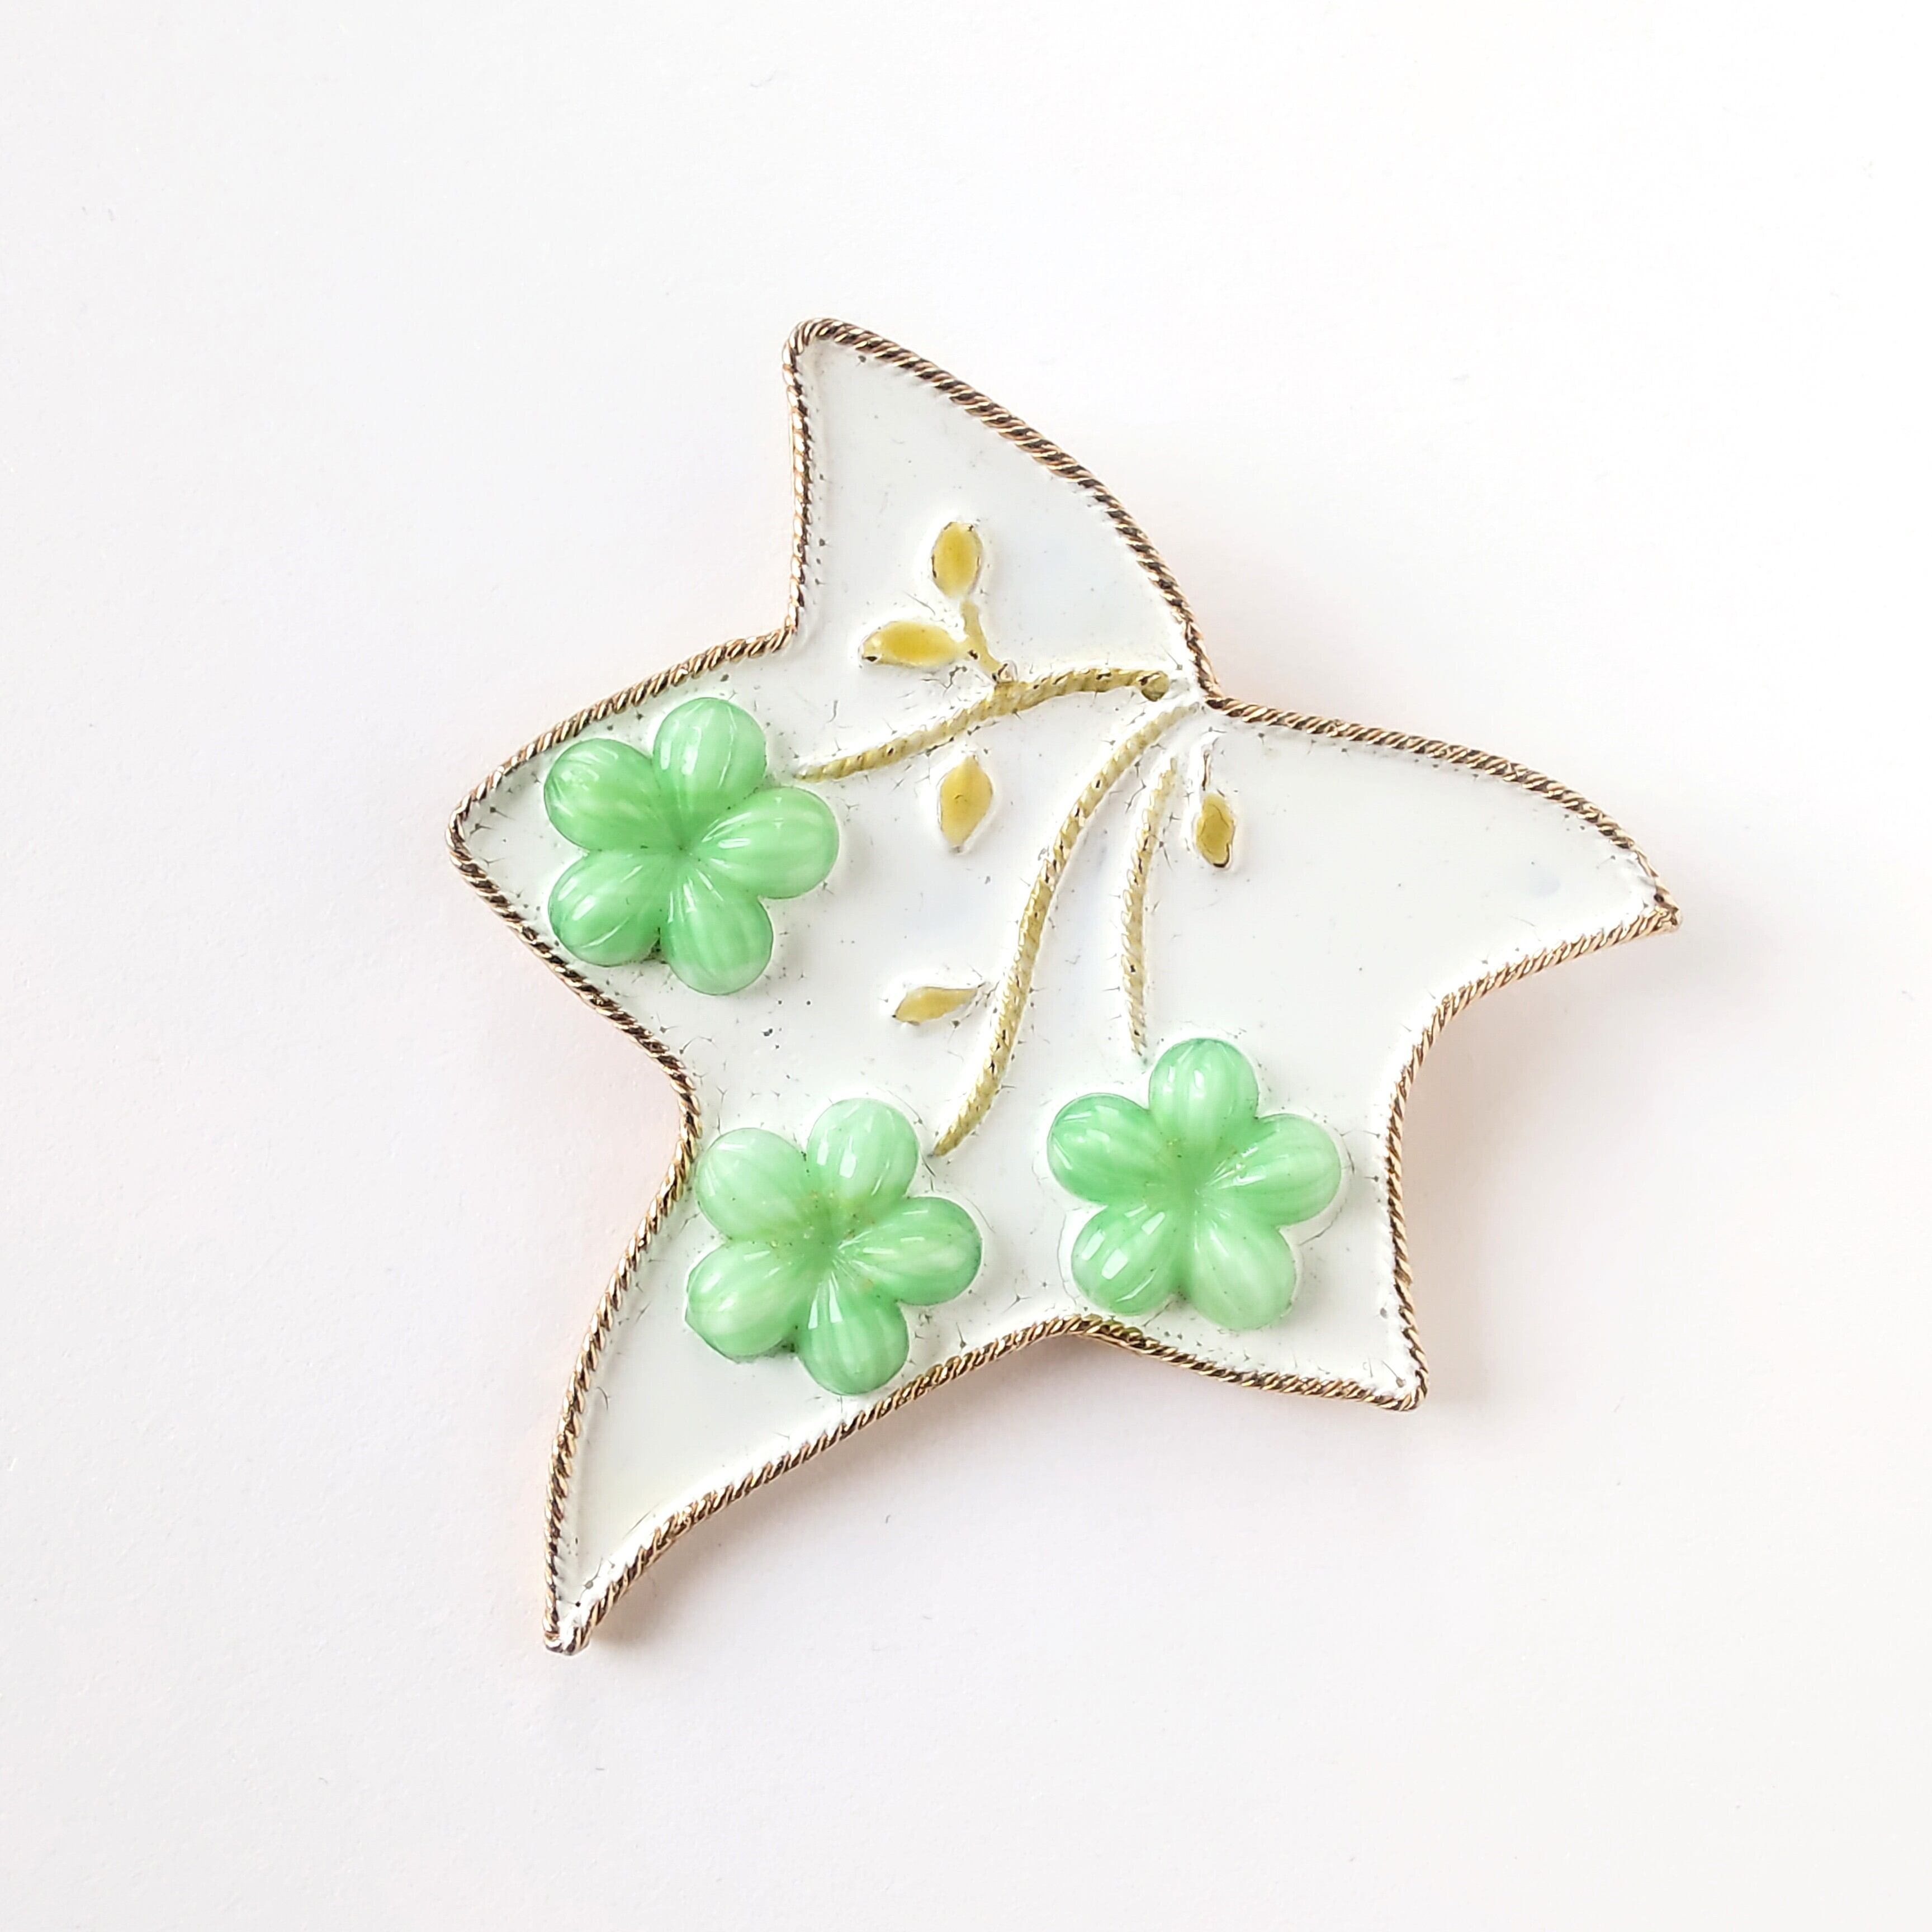 Accessocraft》 white enamel light green glass flower maple leaf